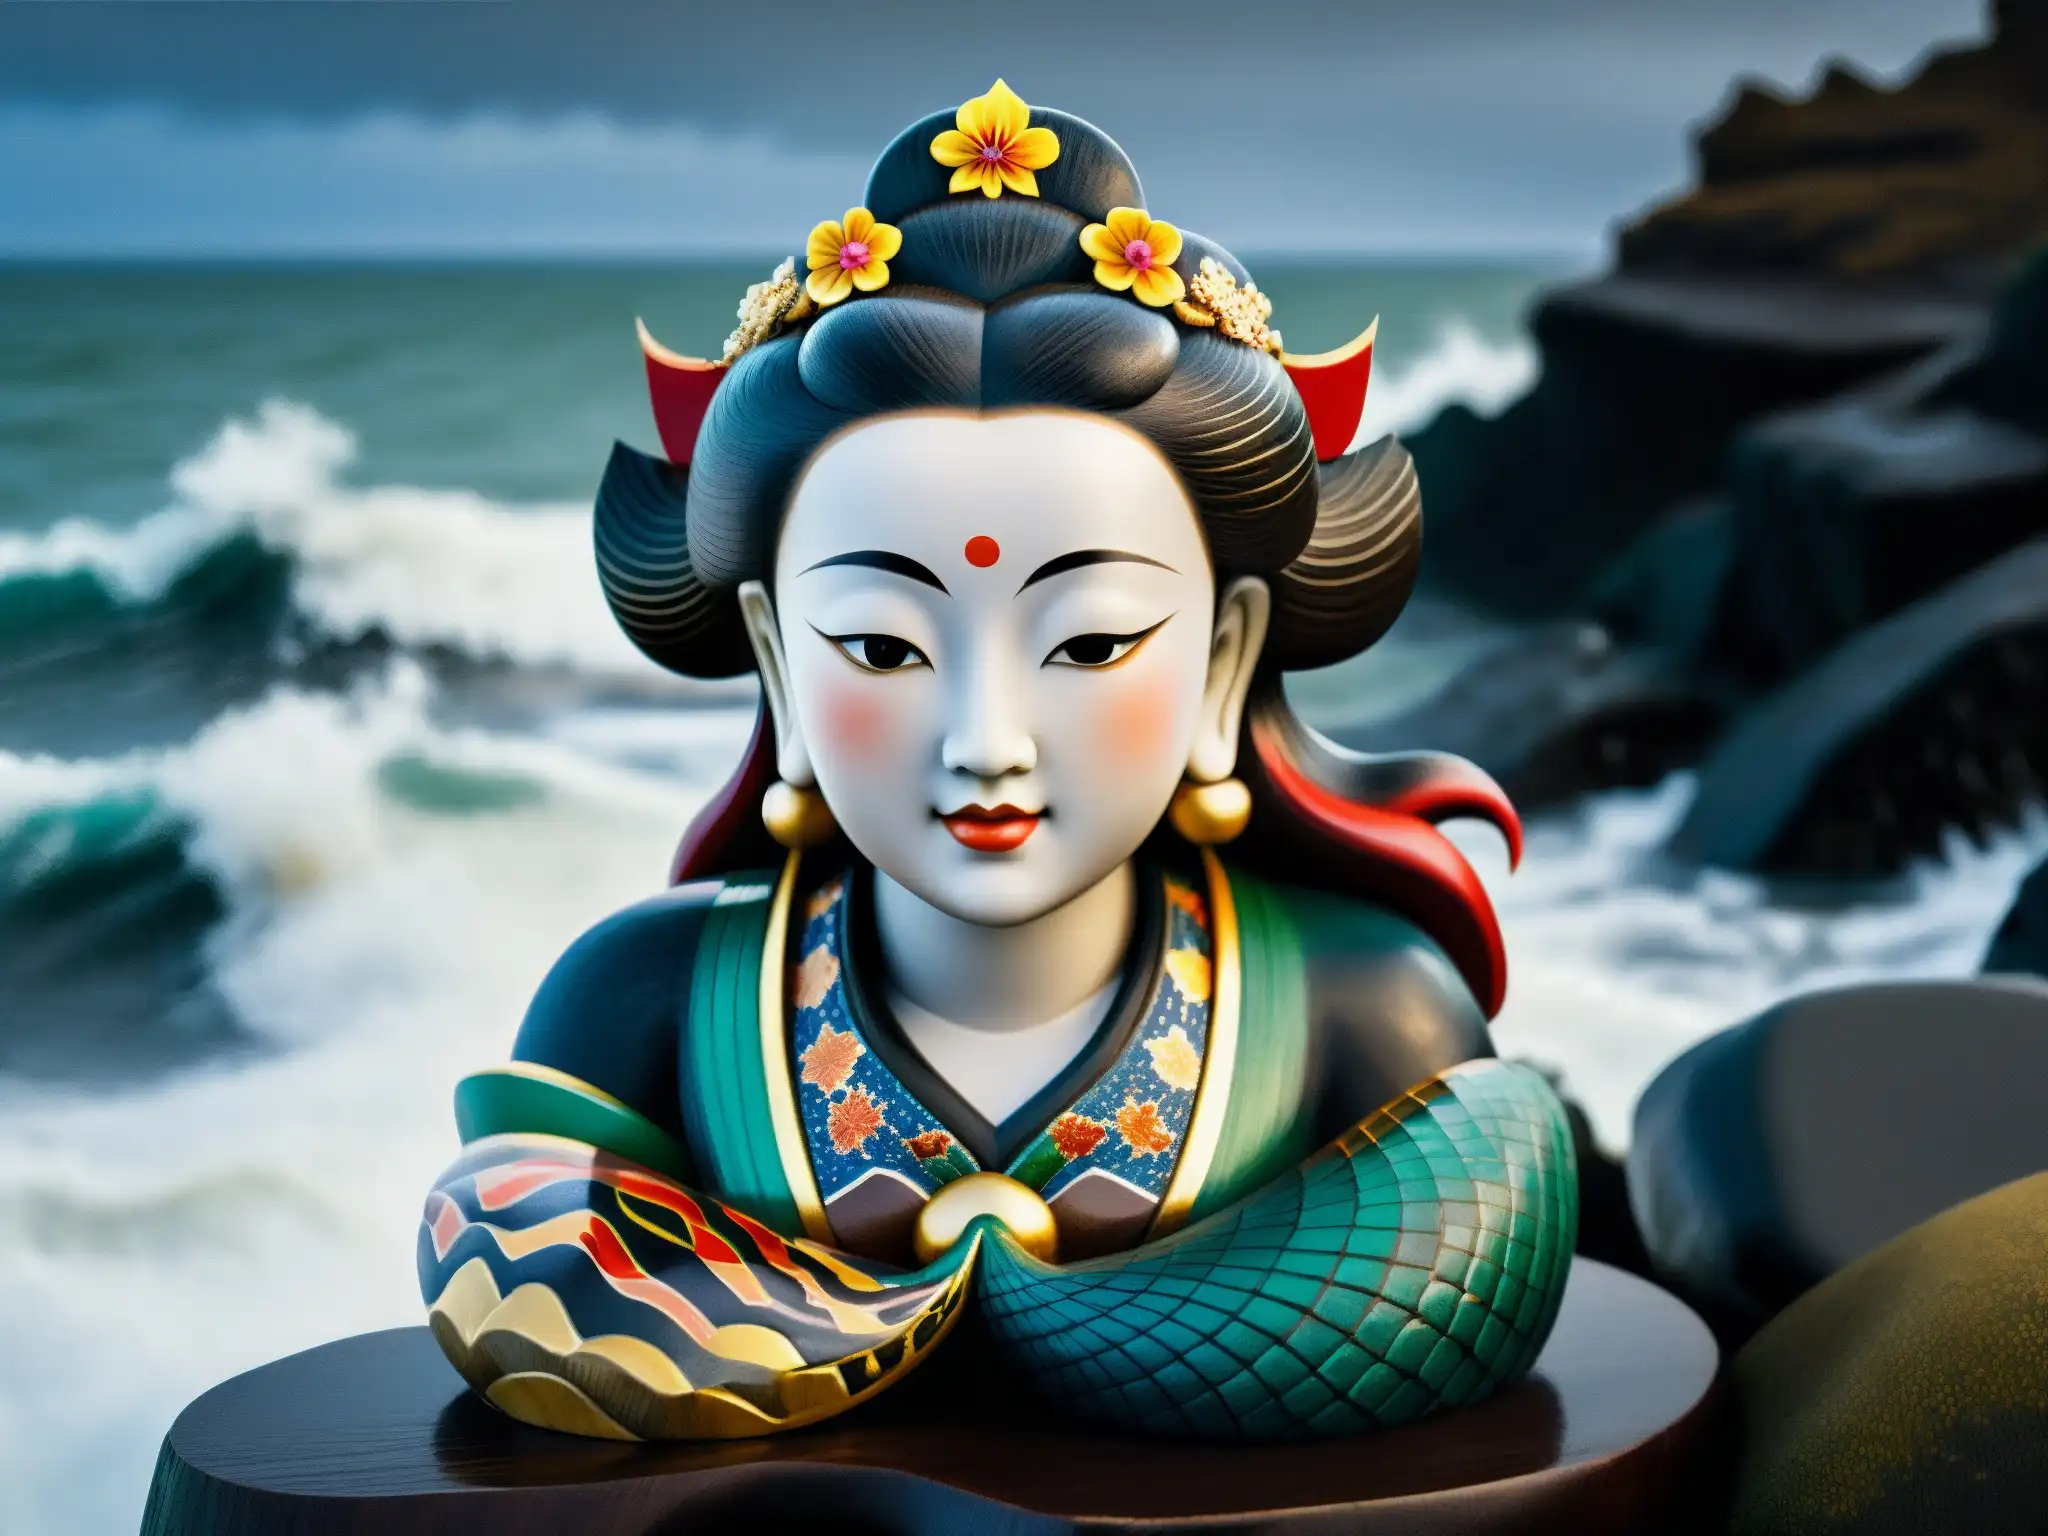 Una estatua de sirena japonesa tallada en madera oscura con patrones coloridos, descansa en la orilla rocosa, con olas y cielo tormentoso